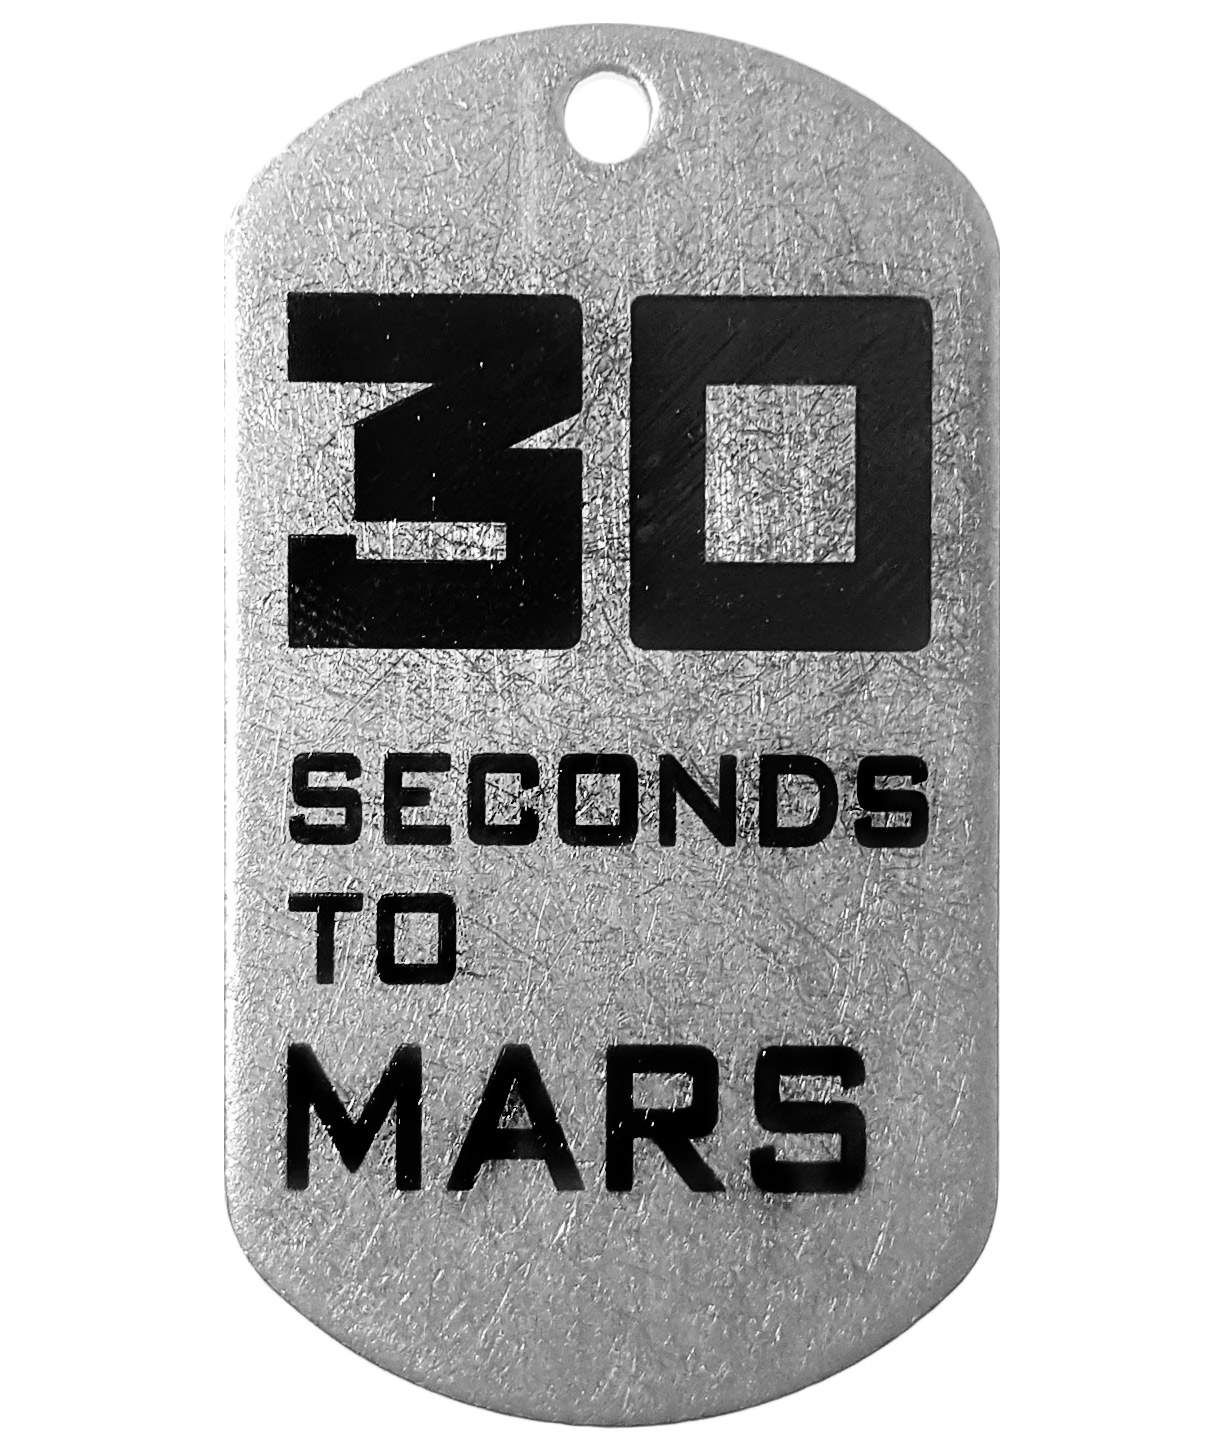 Жетон стальной 30 Seconds To Mars - фото 1 - rockbunker.ru